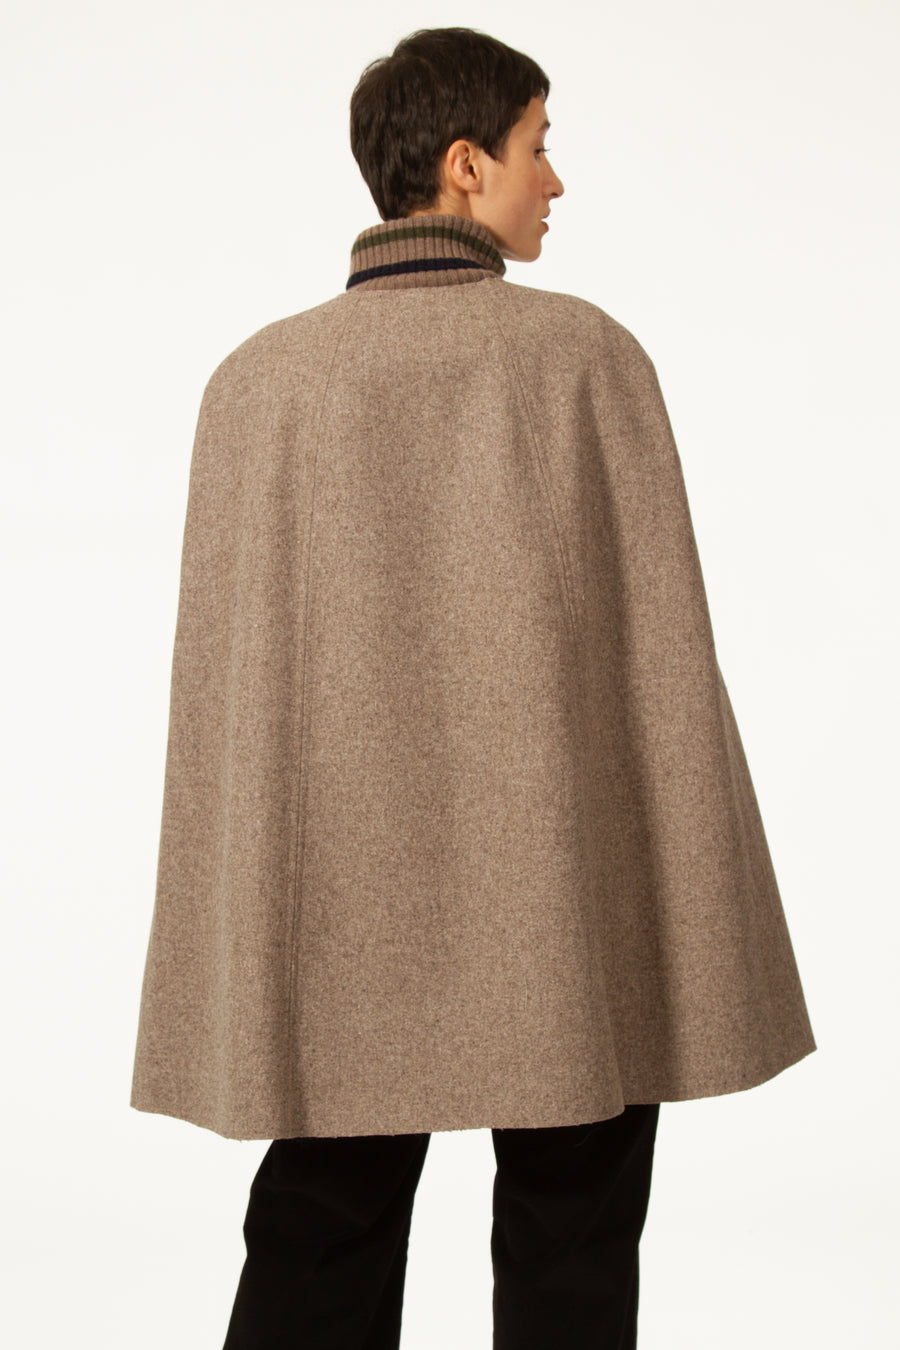 Cape beige à col rond fermée devant par des boutons. En drap de laine naturel écologique millésimé, la cape DORIAN est une pièce indispensable qui vous tiendra au chaud cet hiver.